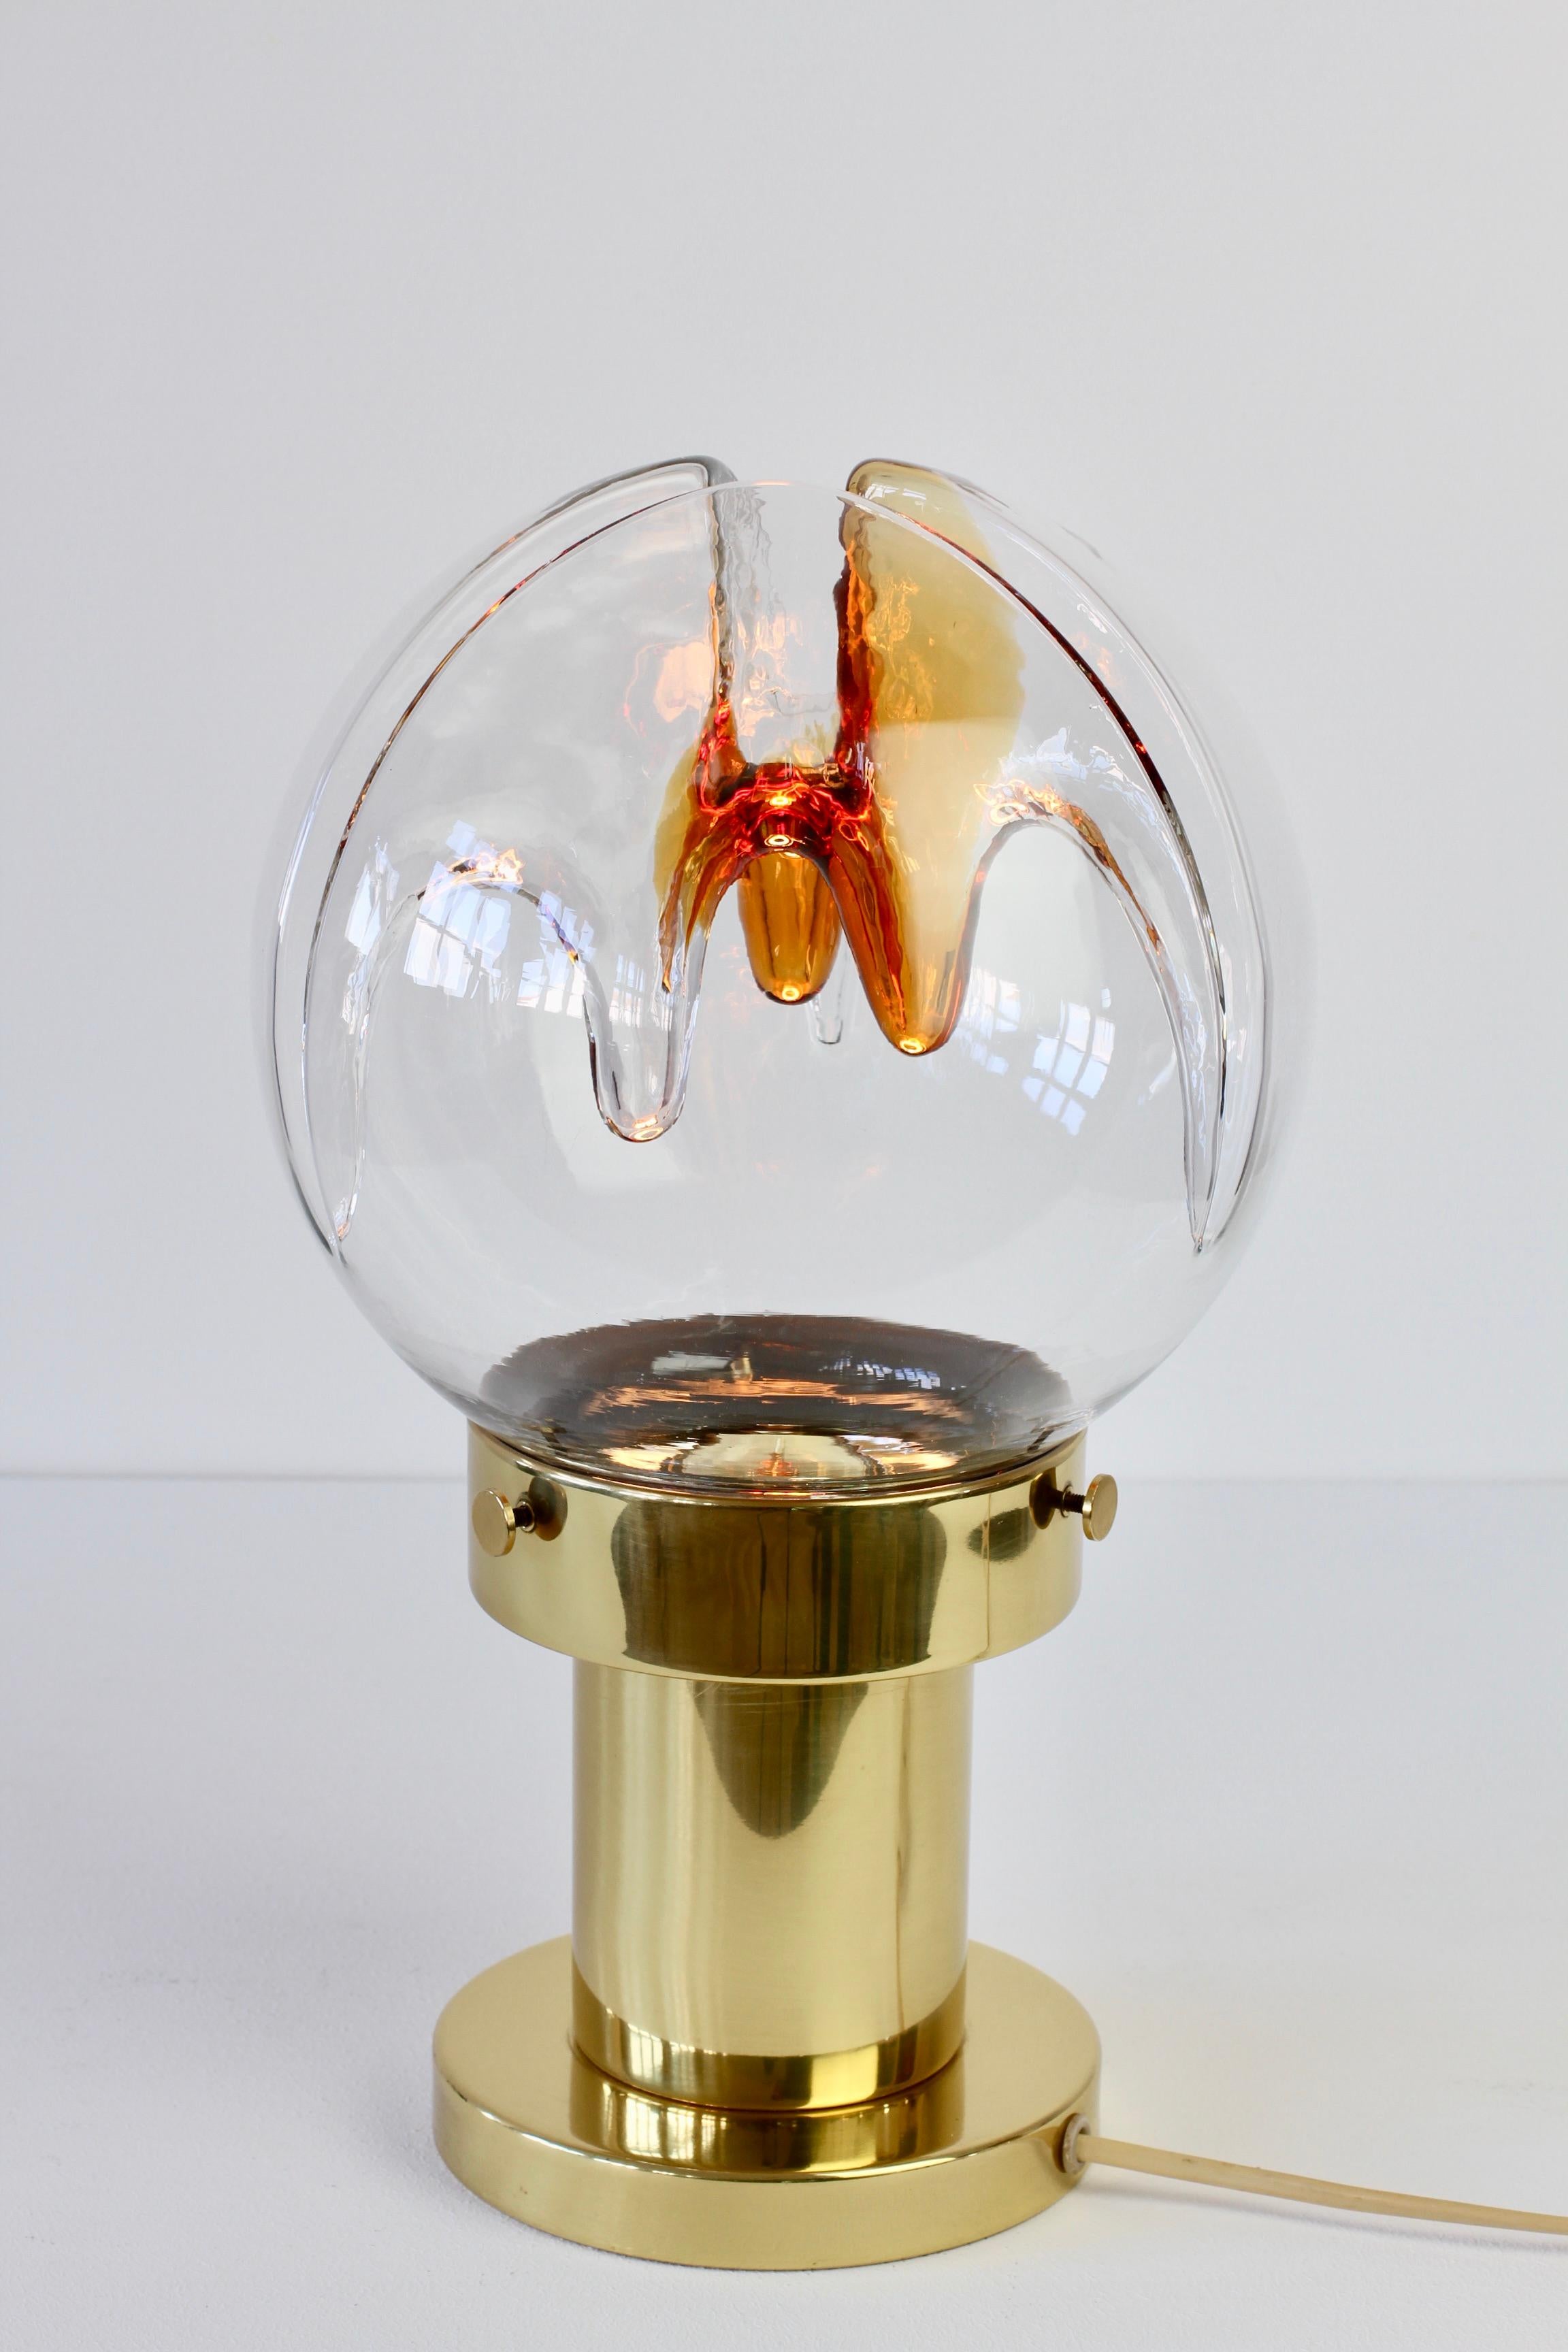 Tischlampe aus strukturiertem Glas von Kaiser Leuchten aus der Mitte des Jahrhunderts mit einem Schirm aus farbigem Murano-Glas von Mazzega aus den 1970er Jahren. Ein fantastisches Design mit einem wunderbar strukturierten biomorphen klaren und